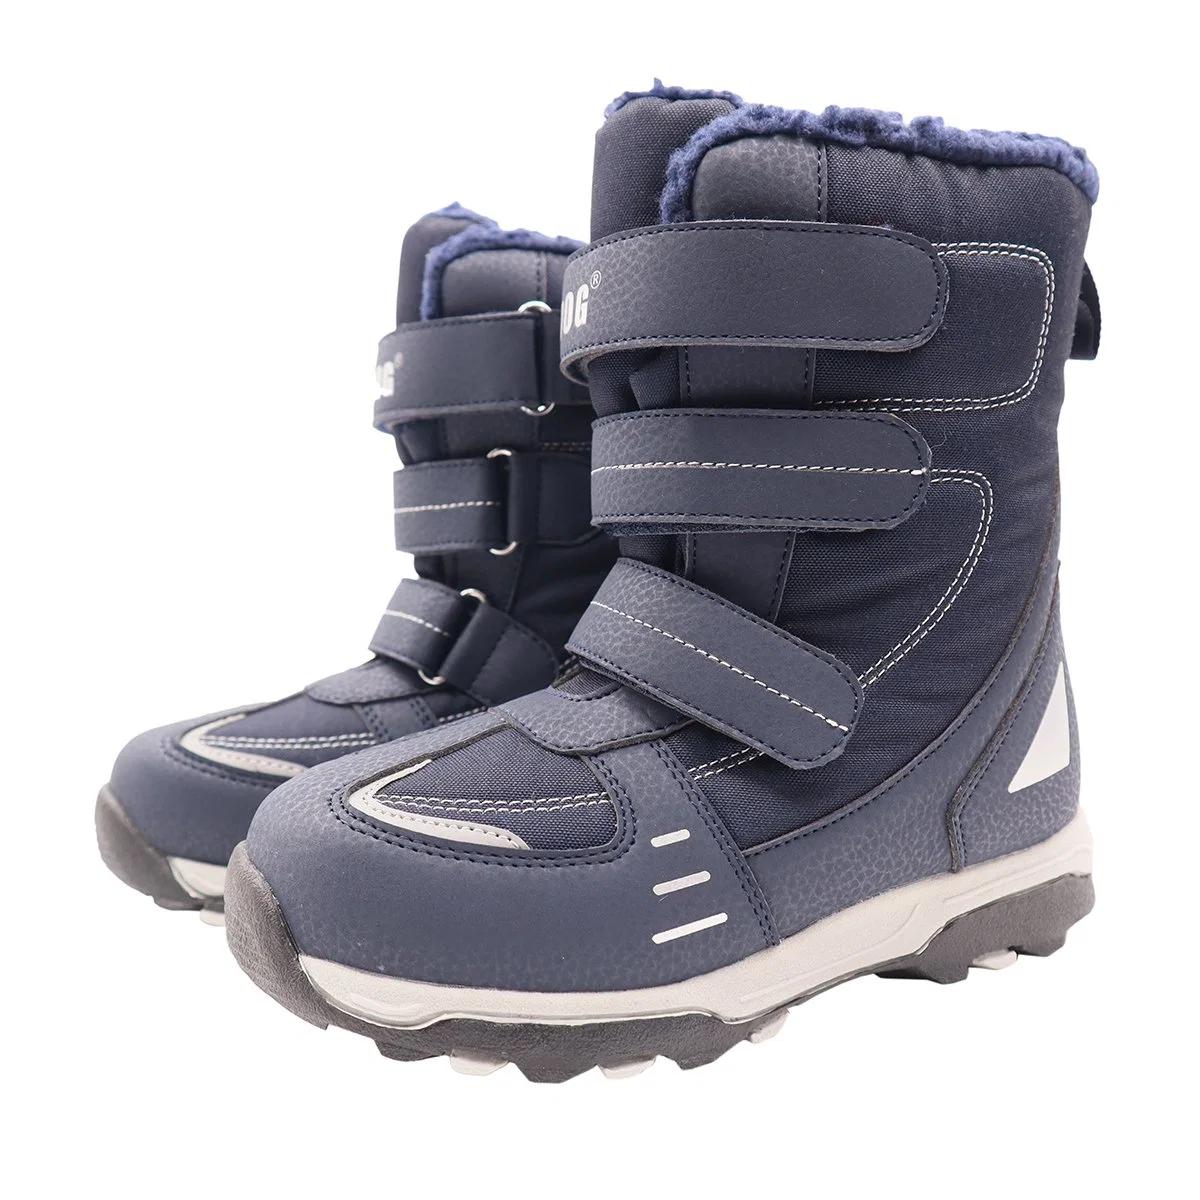 Nieve del invierno botas impermeables a mediados de la Pantorrilla zapatos para niño/niños pequeños